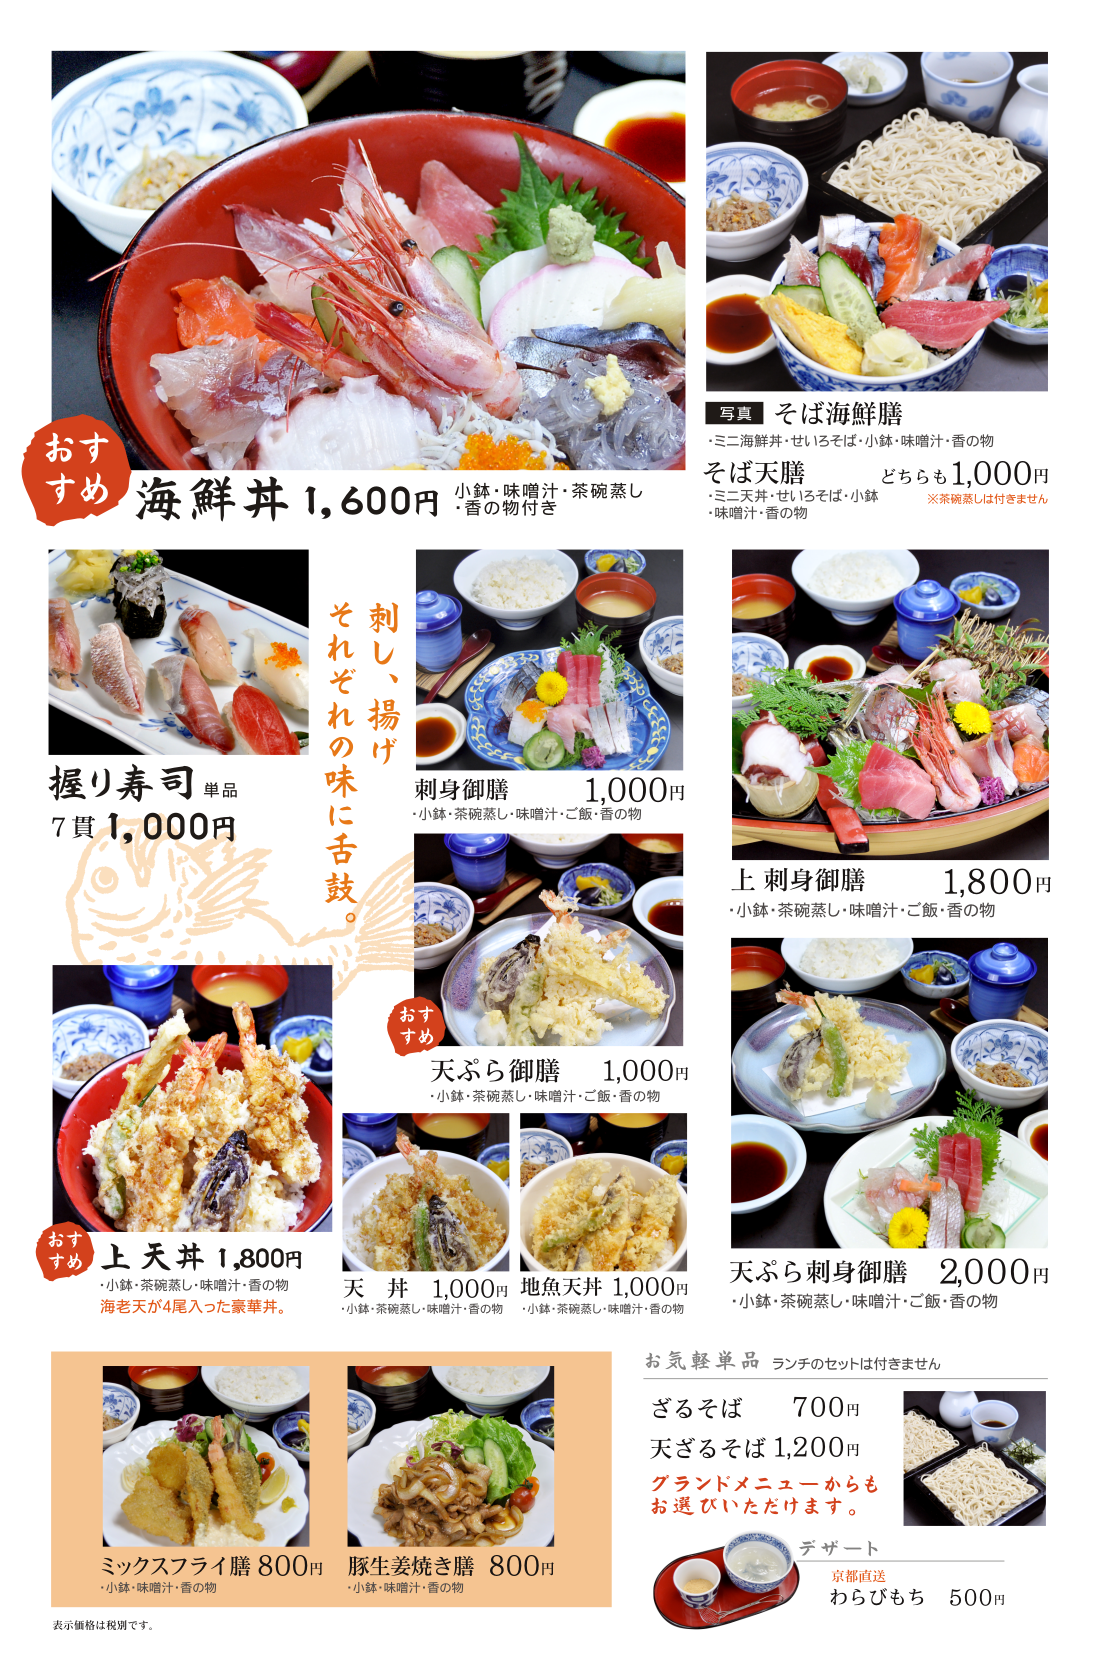 平塚の居酒屋紅谷　恵比寿、ランチメニュー続き。ランチ価格でお手頃なしらす丼、海鮮丼、握り寿司、天ぷら御前等。